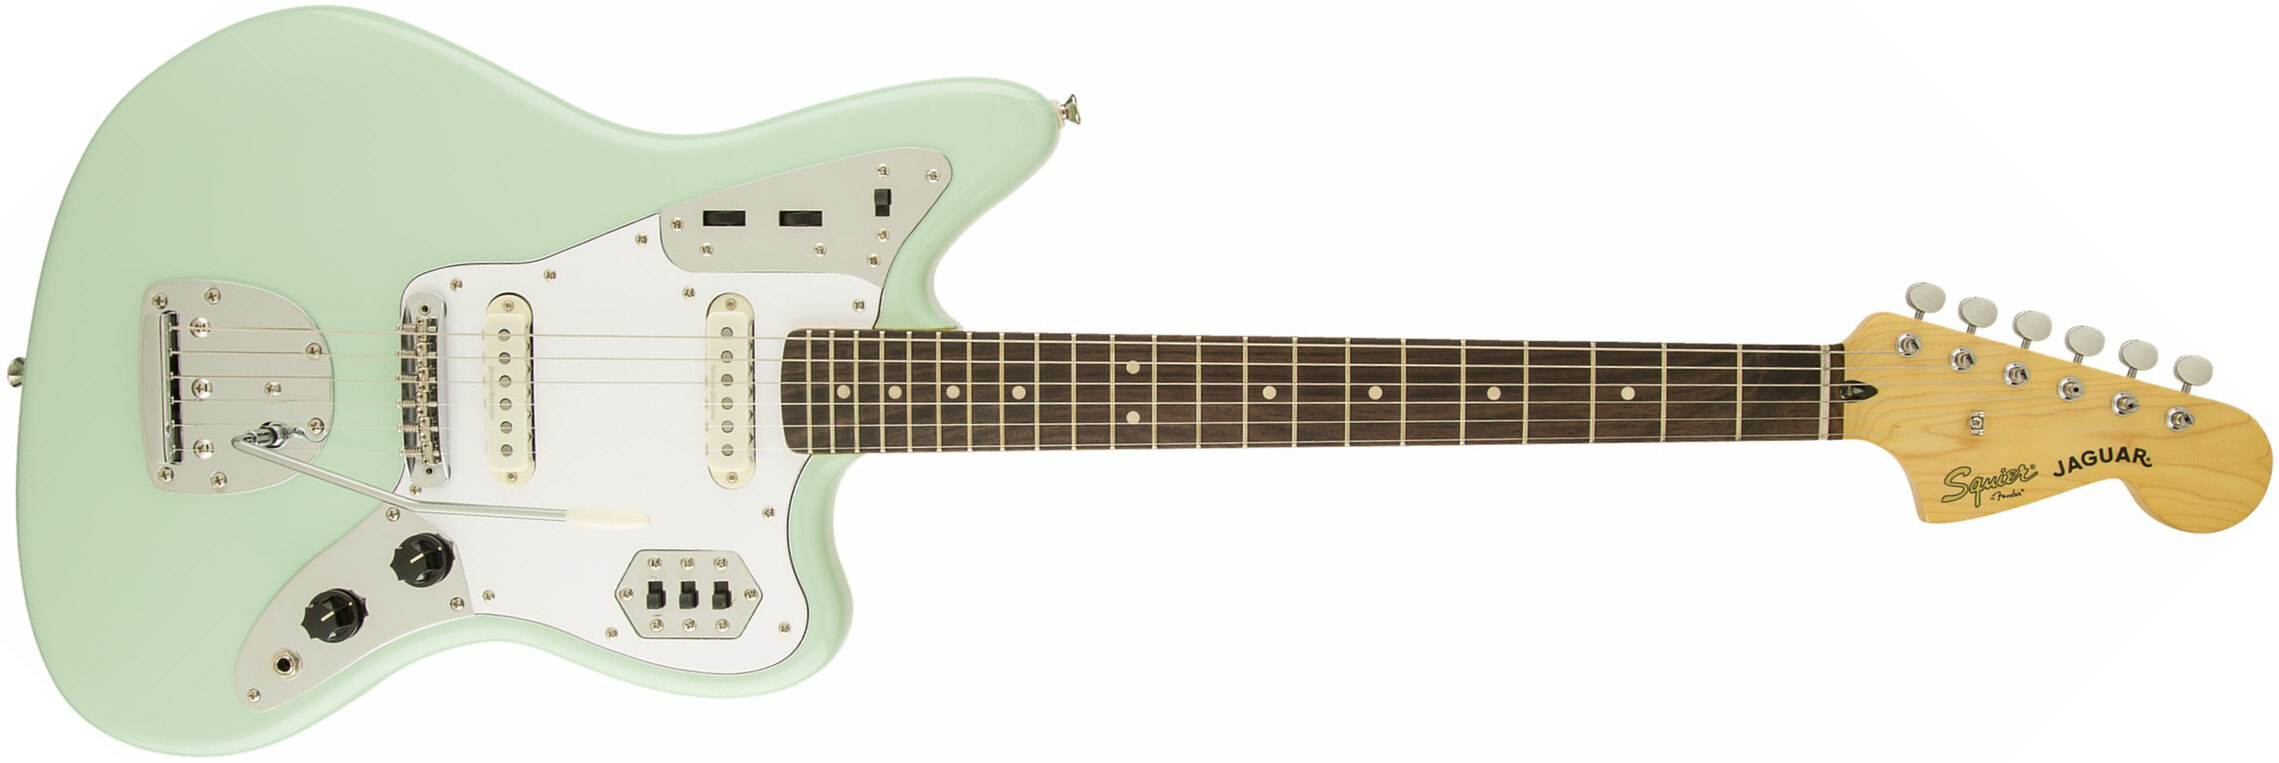 Squier Jaguar Vintage Modified Ss Lau - Surf Green - Guitarra eléctrica con forma de str. - Main picture